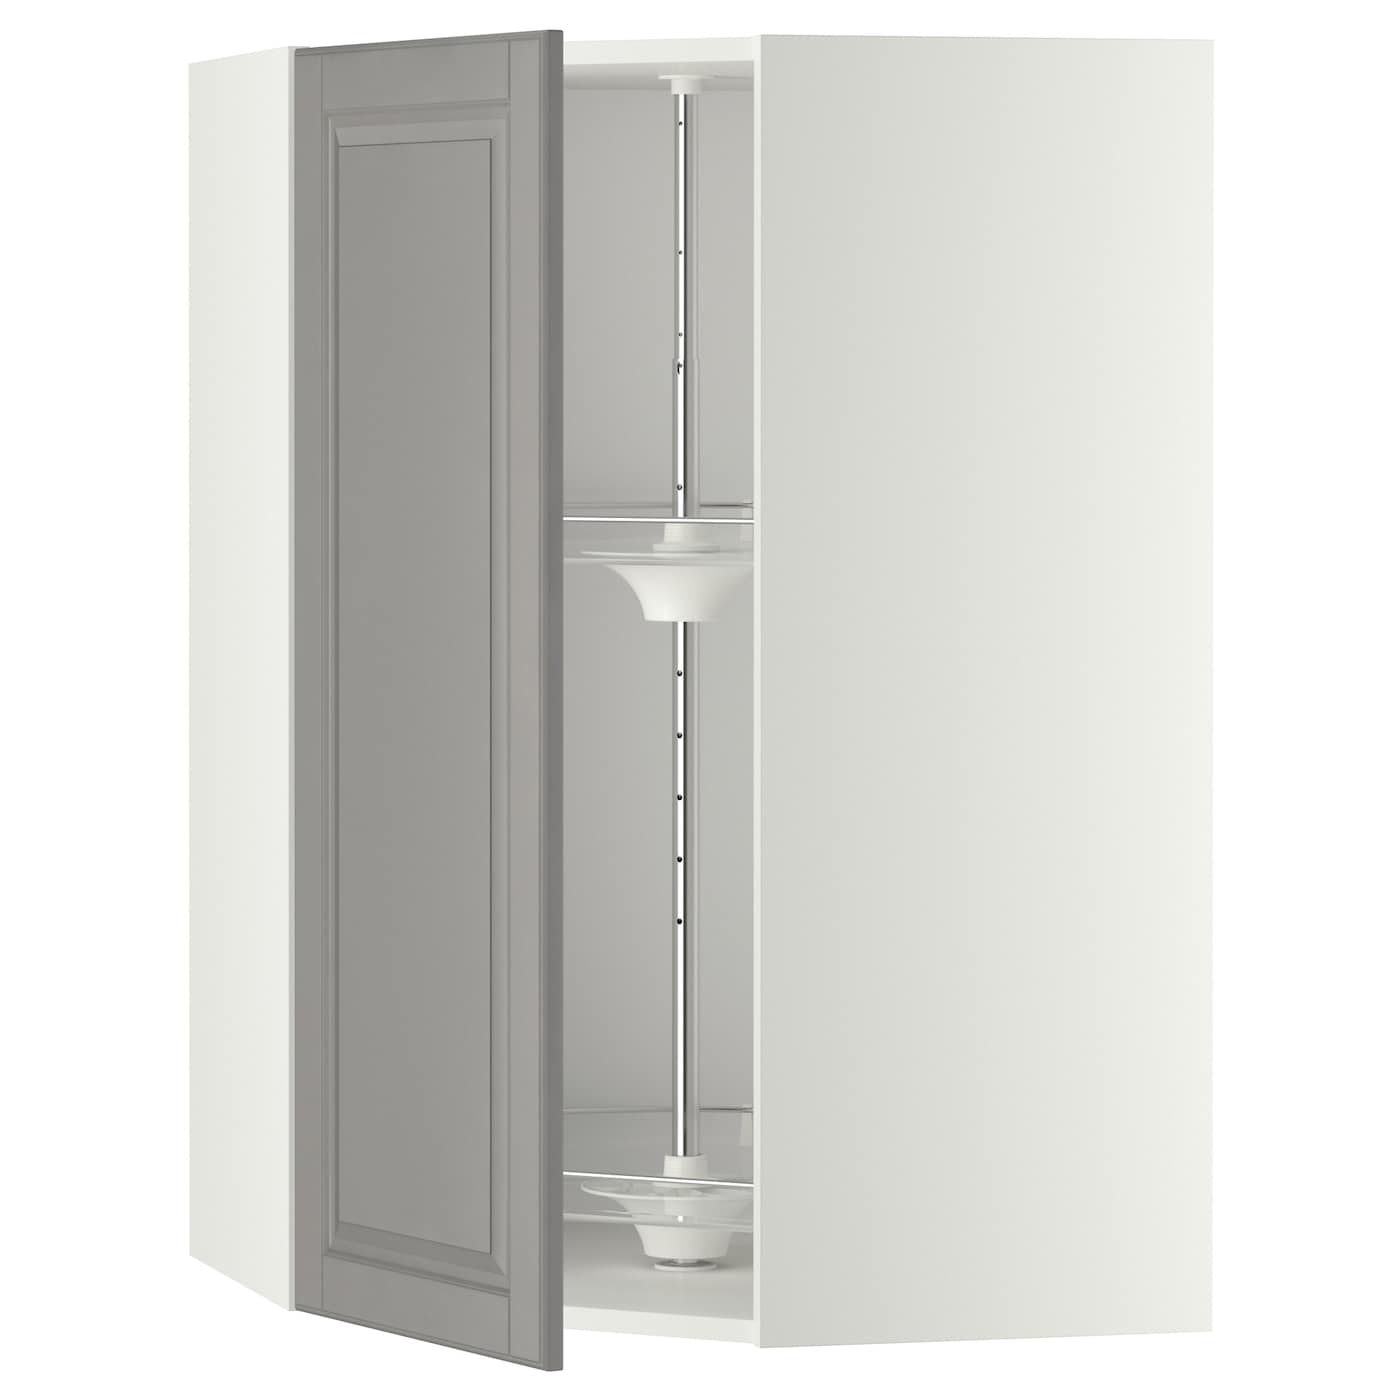 Угловой навесной шкаф с каруселью - METOD  IKEA/  МЕТОД ИКЕА, 100х68 см, белый/серый